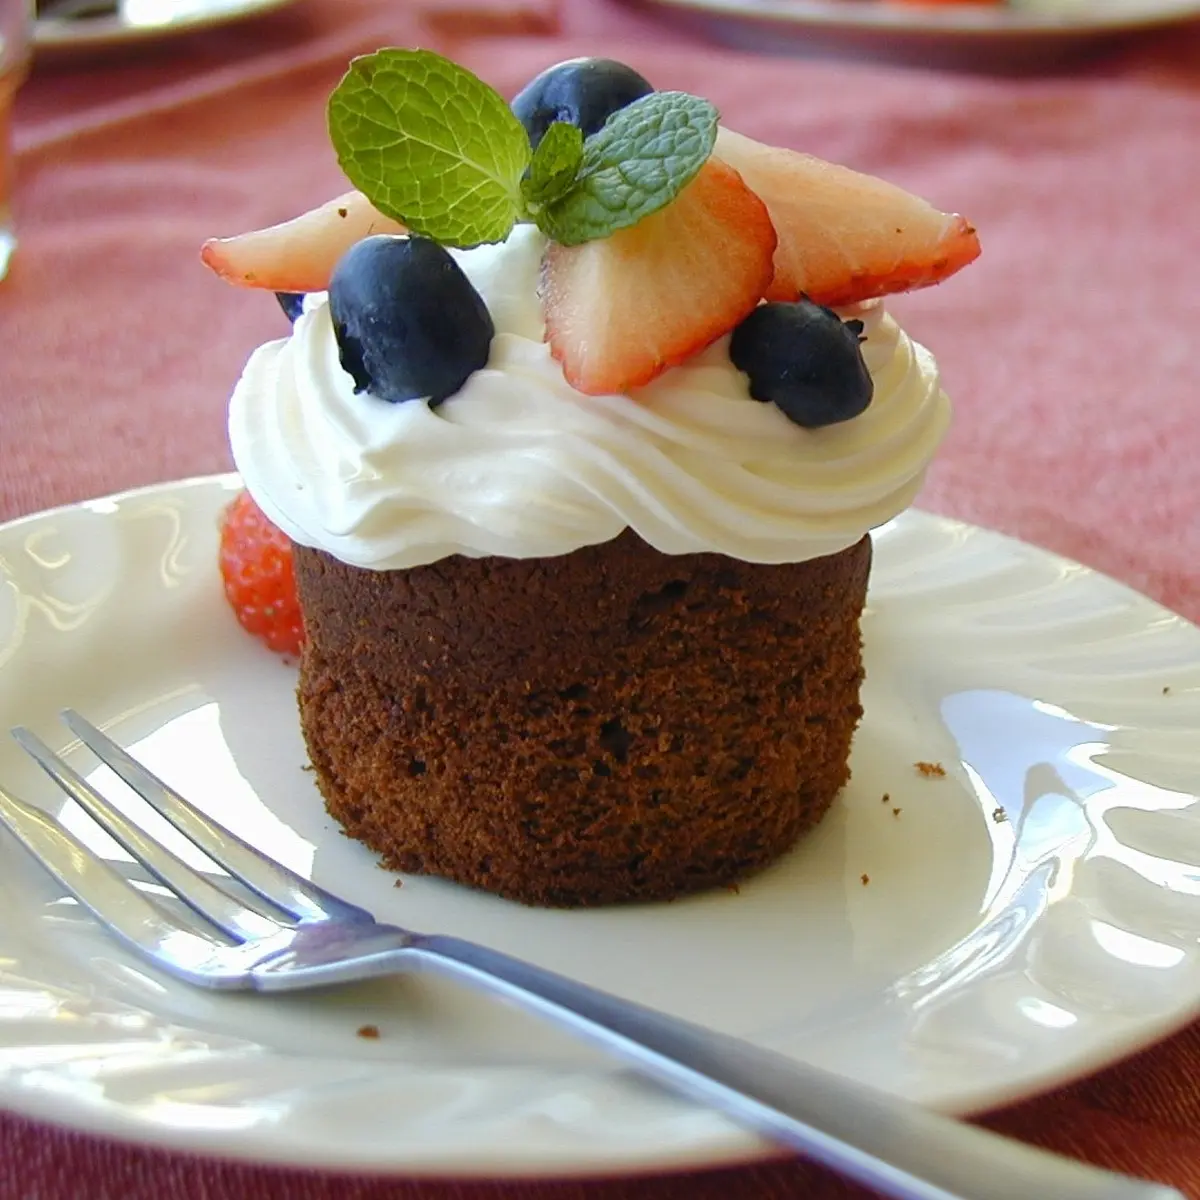 チョコカップケーキのレシピ 作り方 小宮山 美香 料理教室検索サイト クスパ